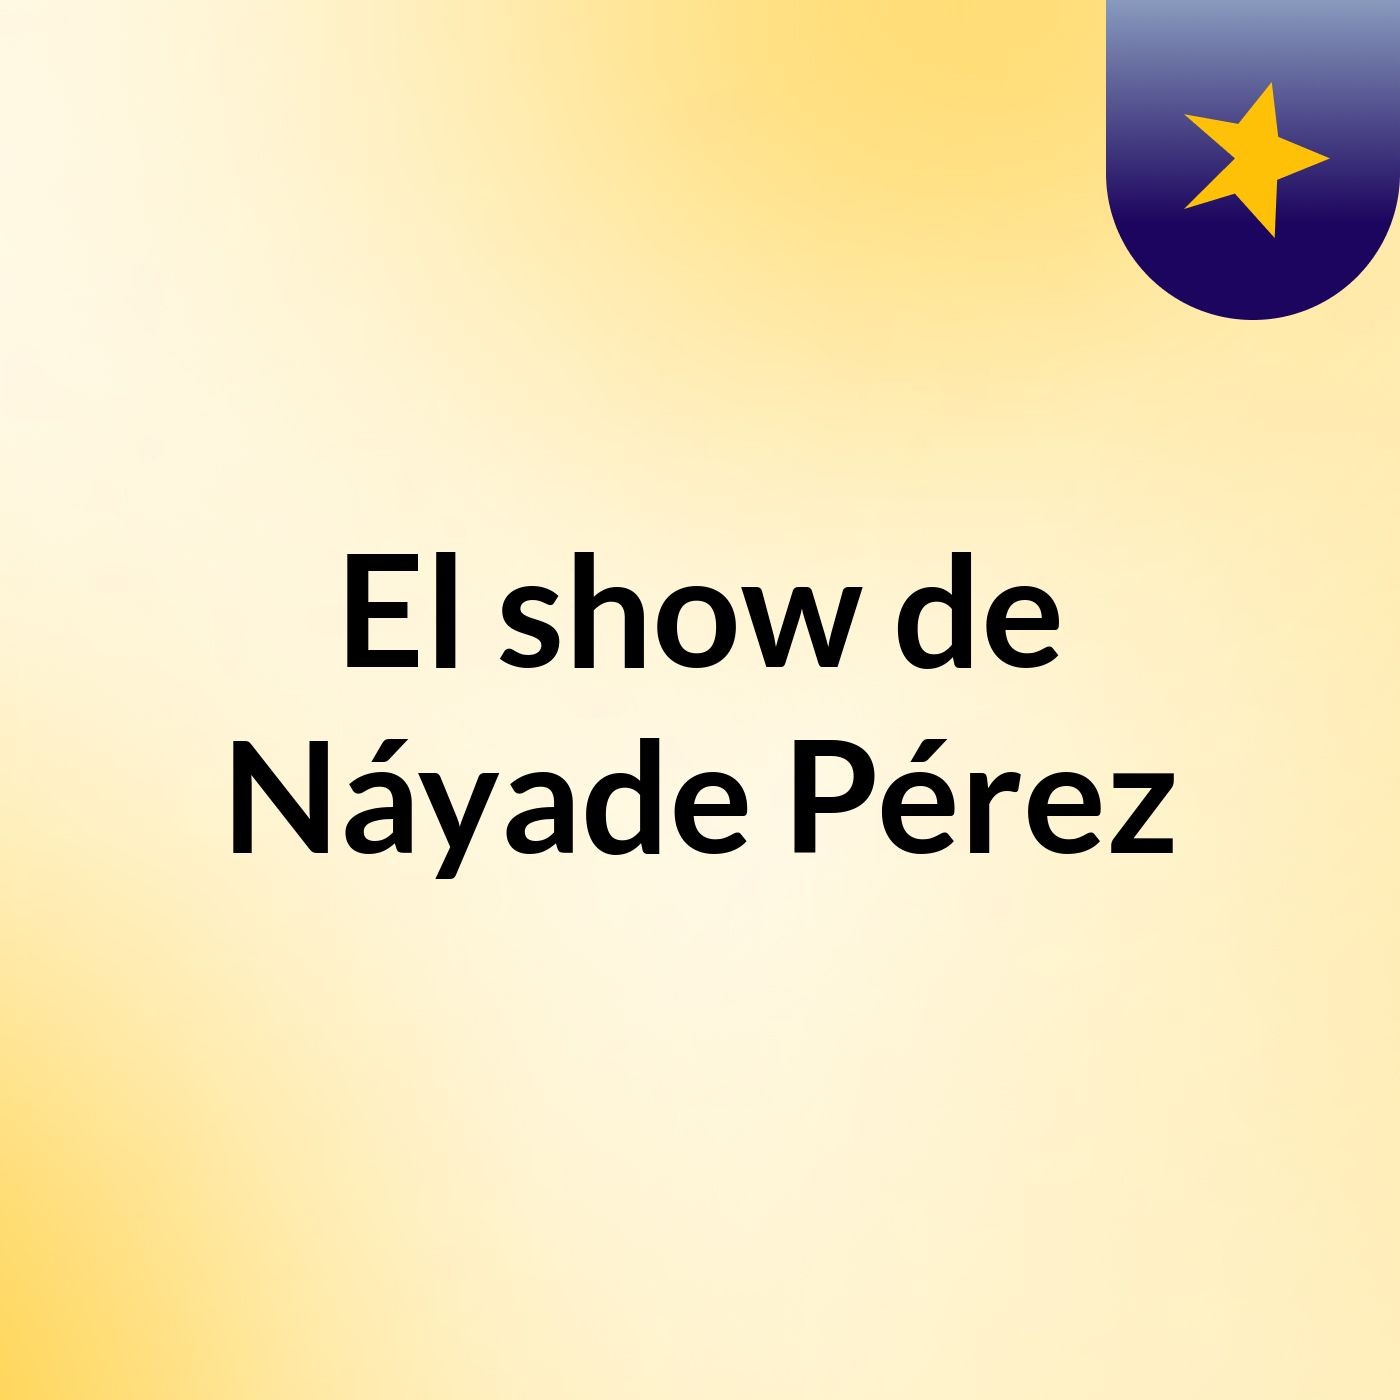 El show de Náyade Pérez